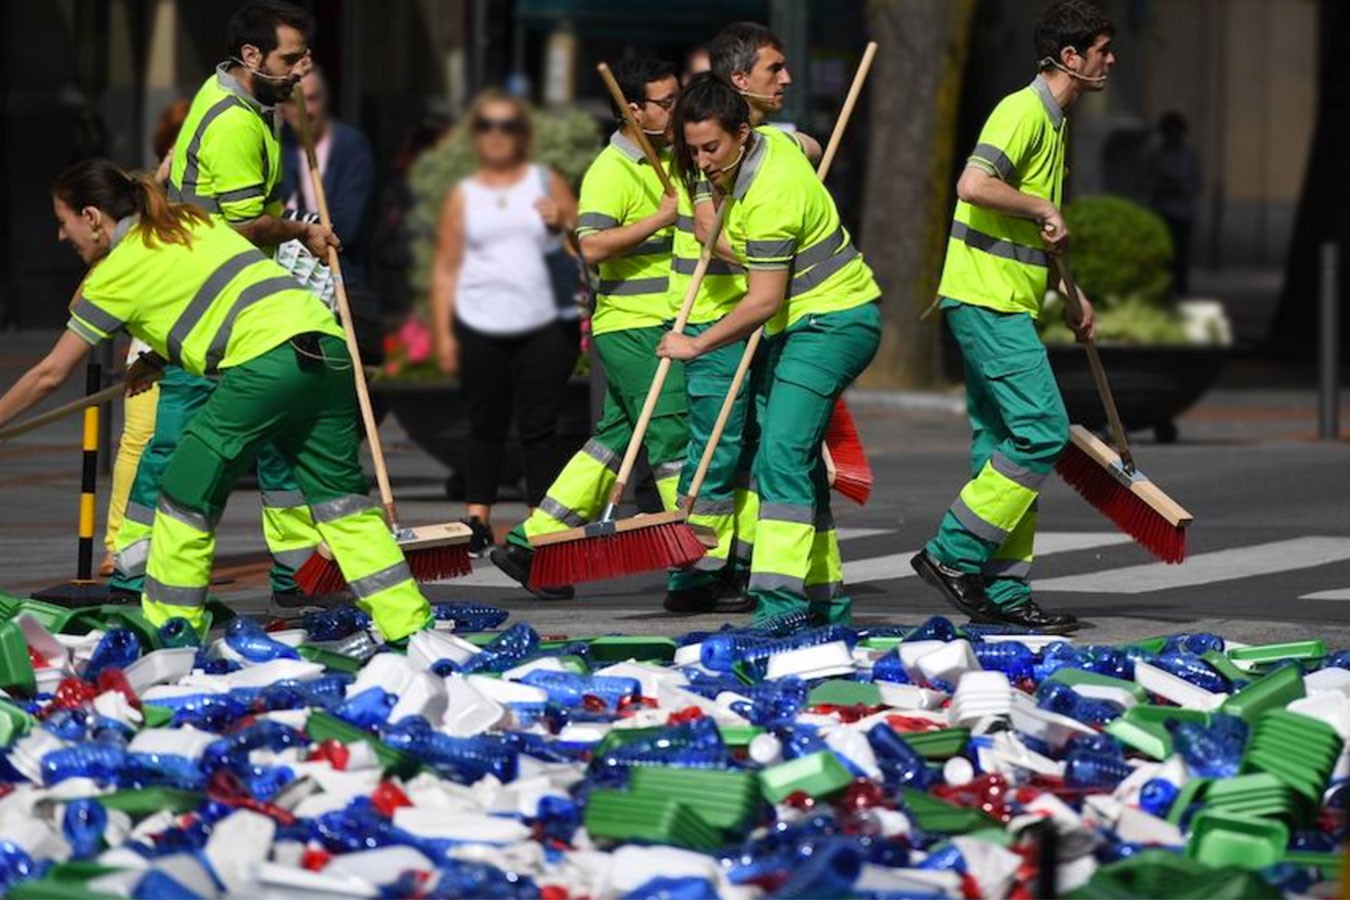 Campaña concienciación al reciclaje, para Diputación de Bilbao.